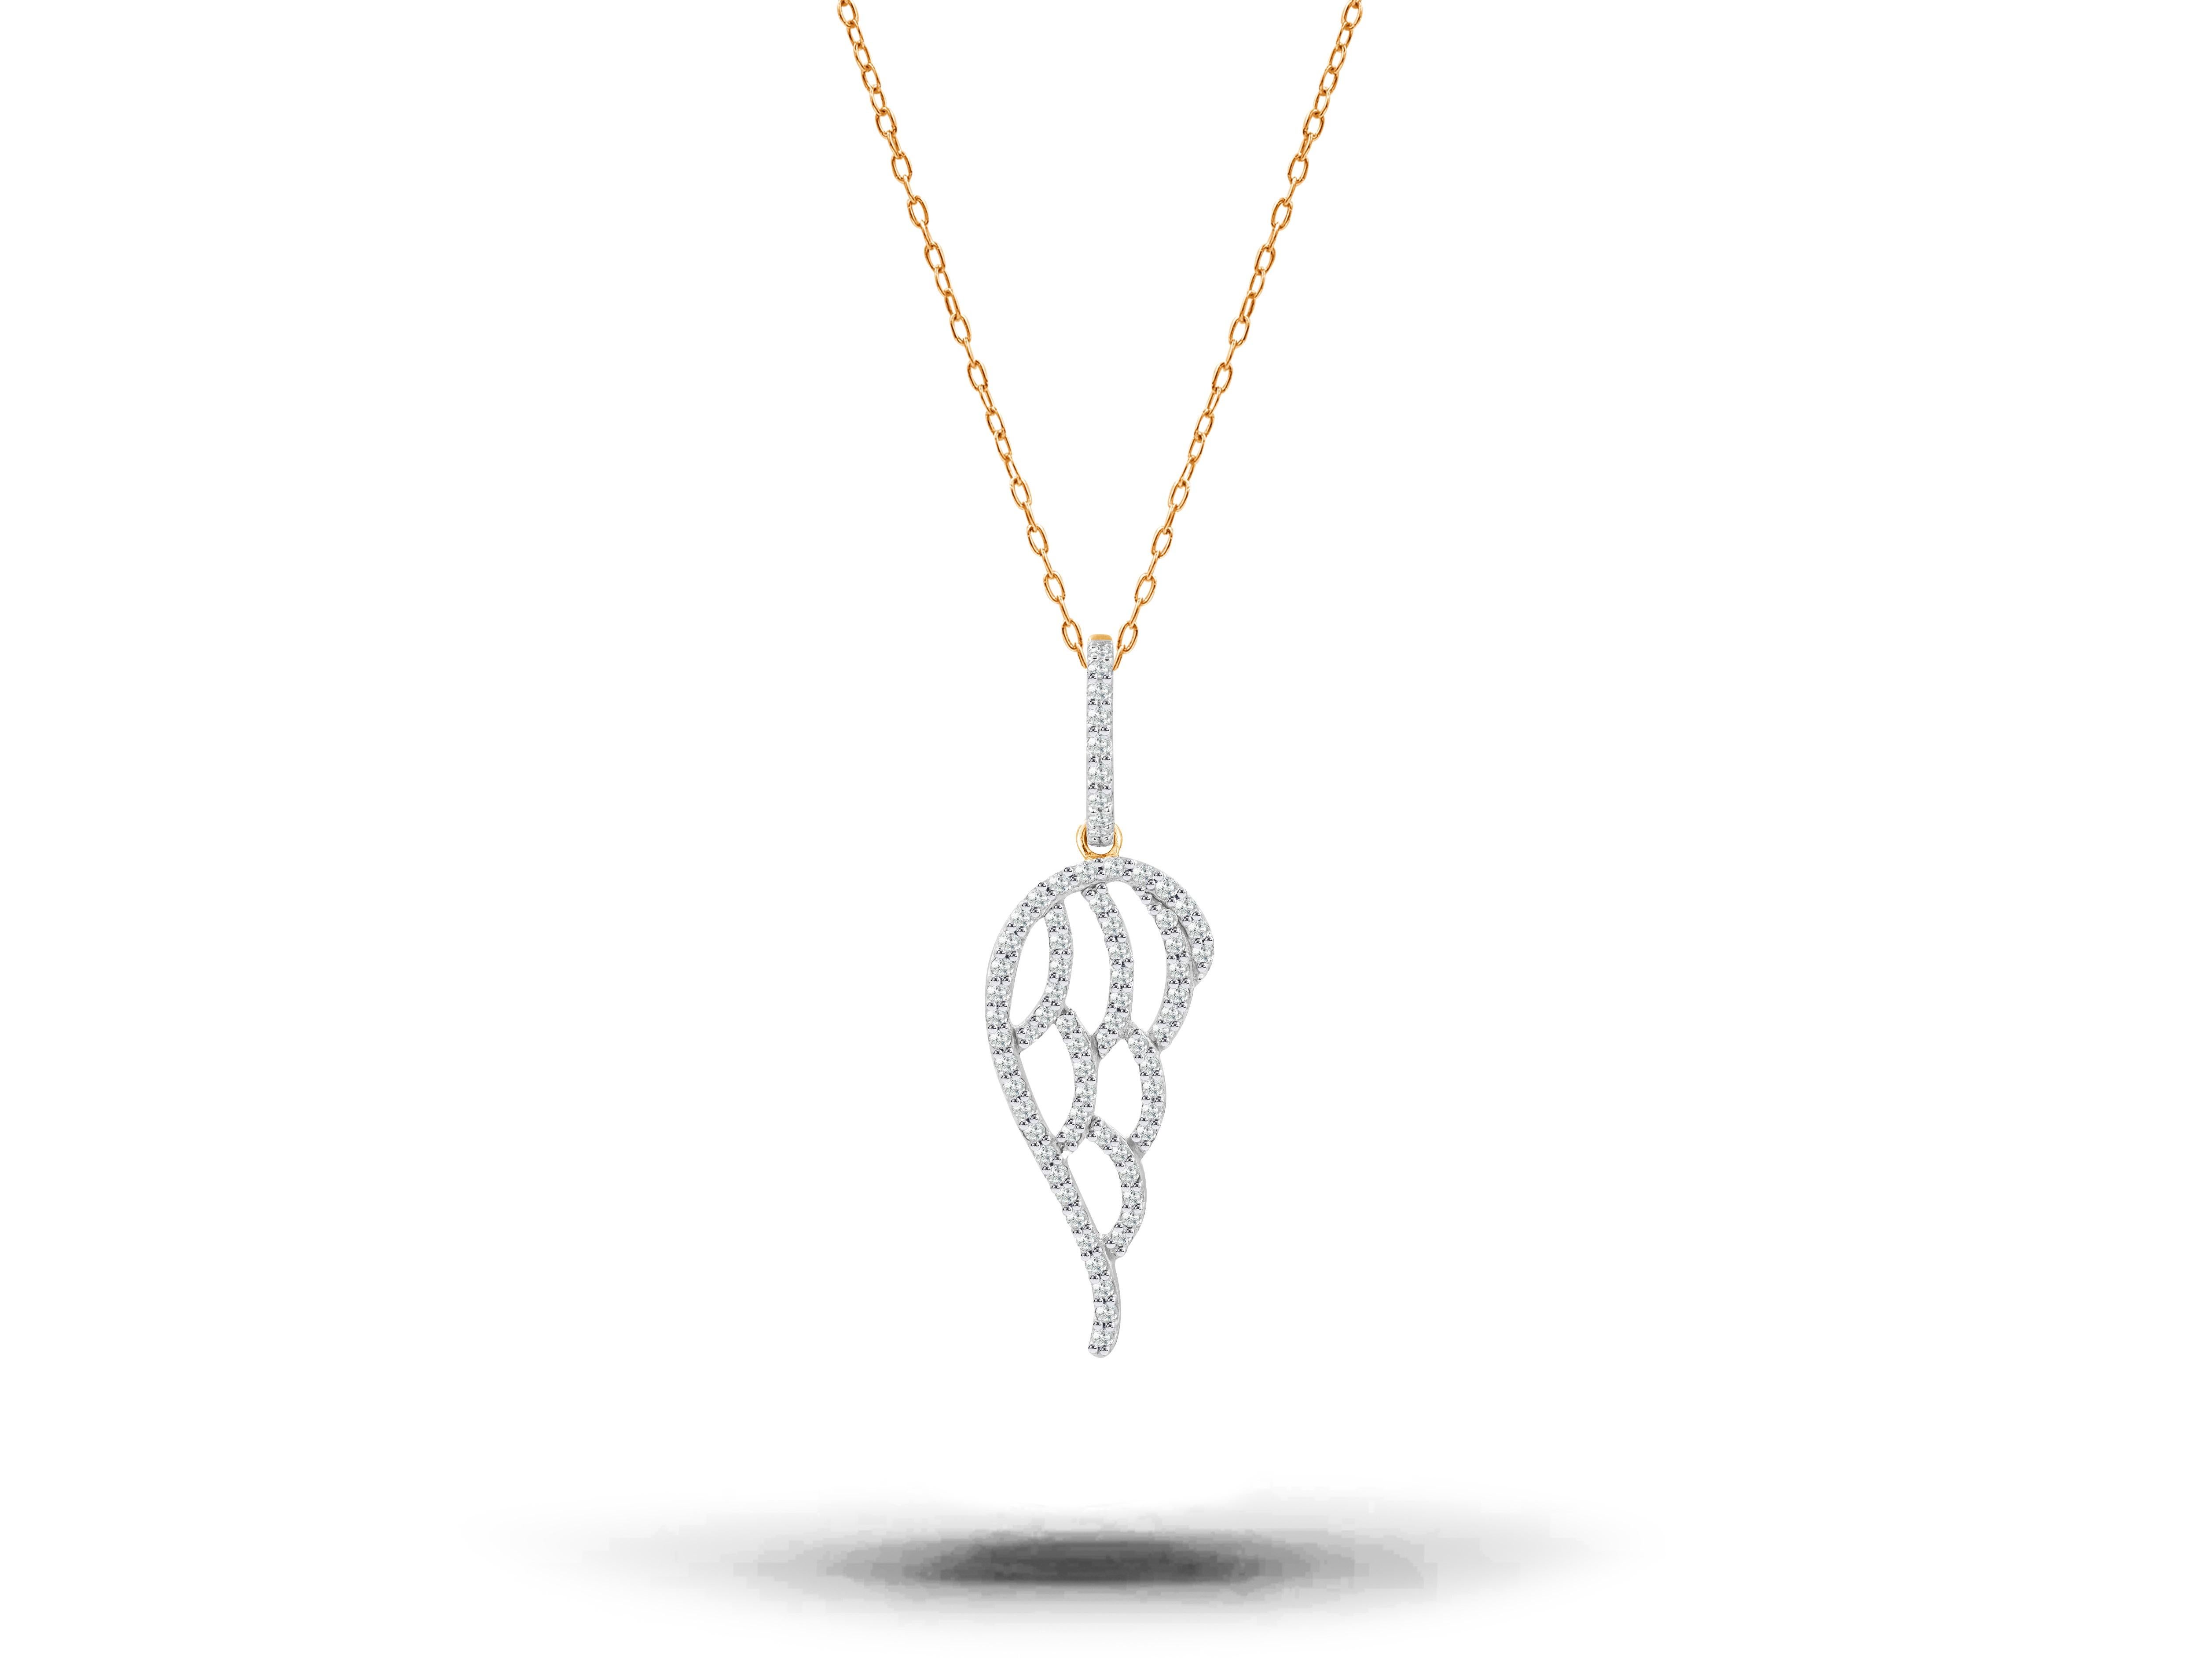 Le collier Aile d'ange en diamant est fabriqué en or massif 14K.

Disponible en trois couleurs d'or : Or rose / Or blanc / Or jaune.

Un collier d'ailes d'ange en or massif et diamant est réalisé avec la perfection de l'art. Un cadeau de protection